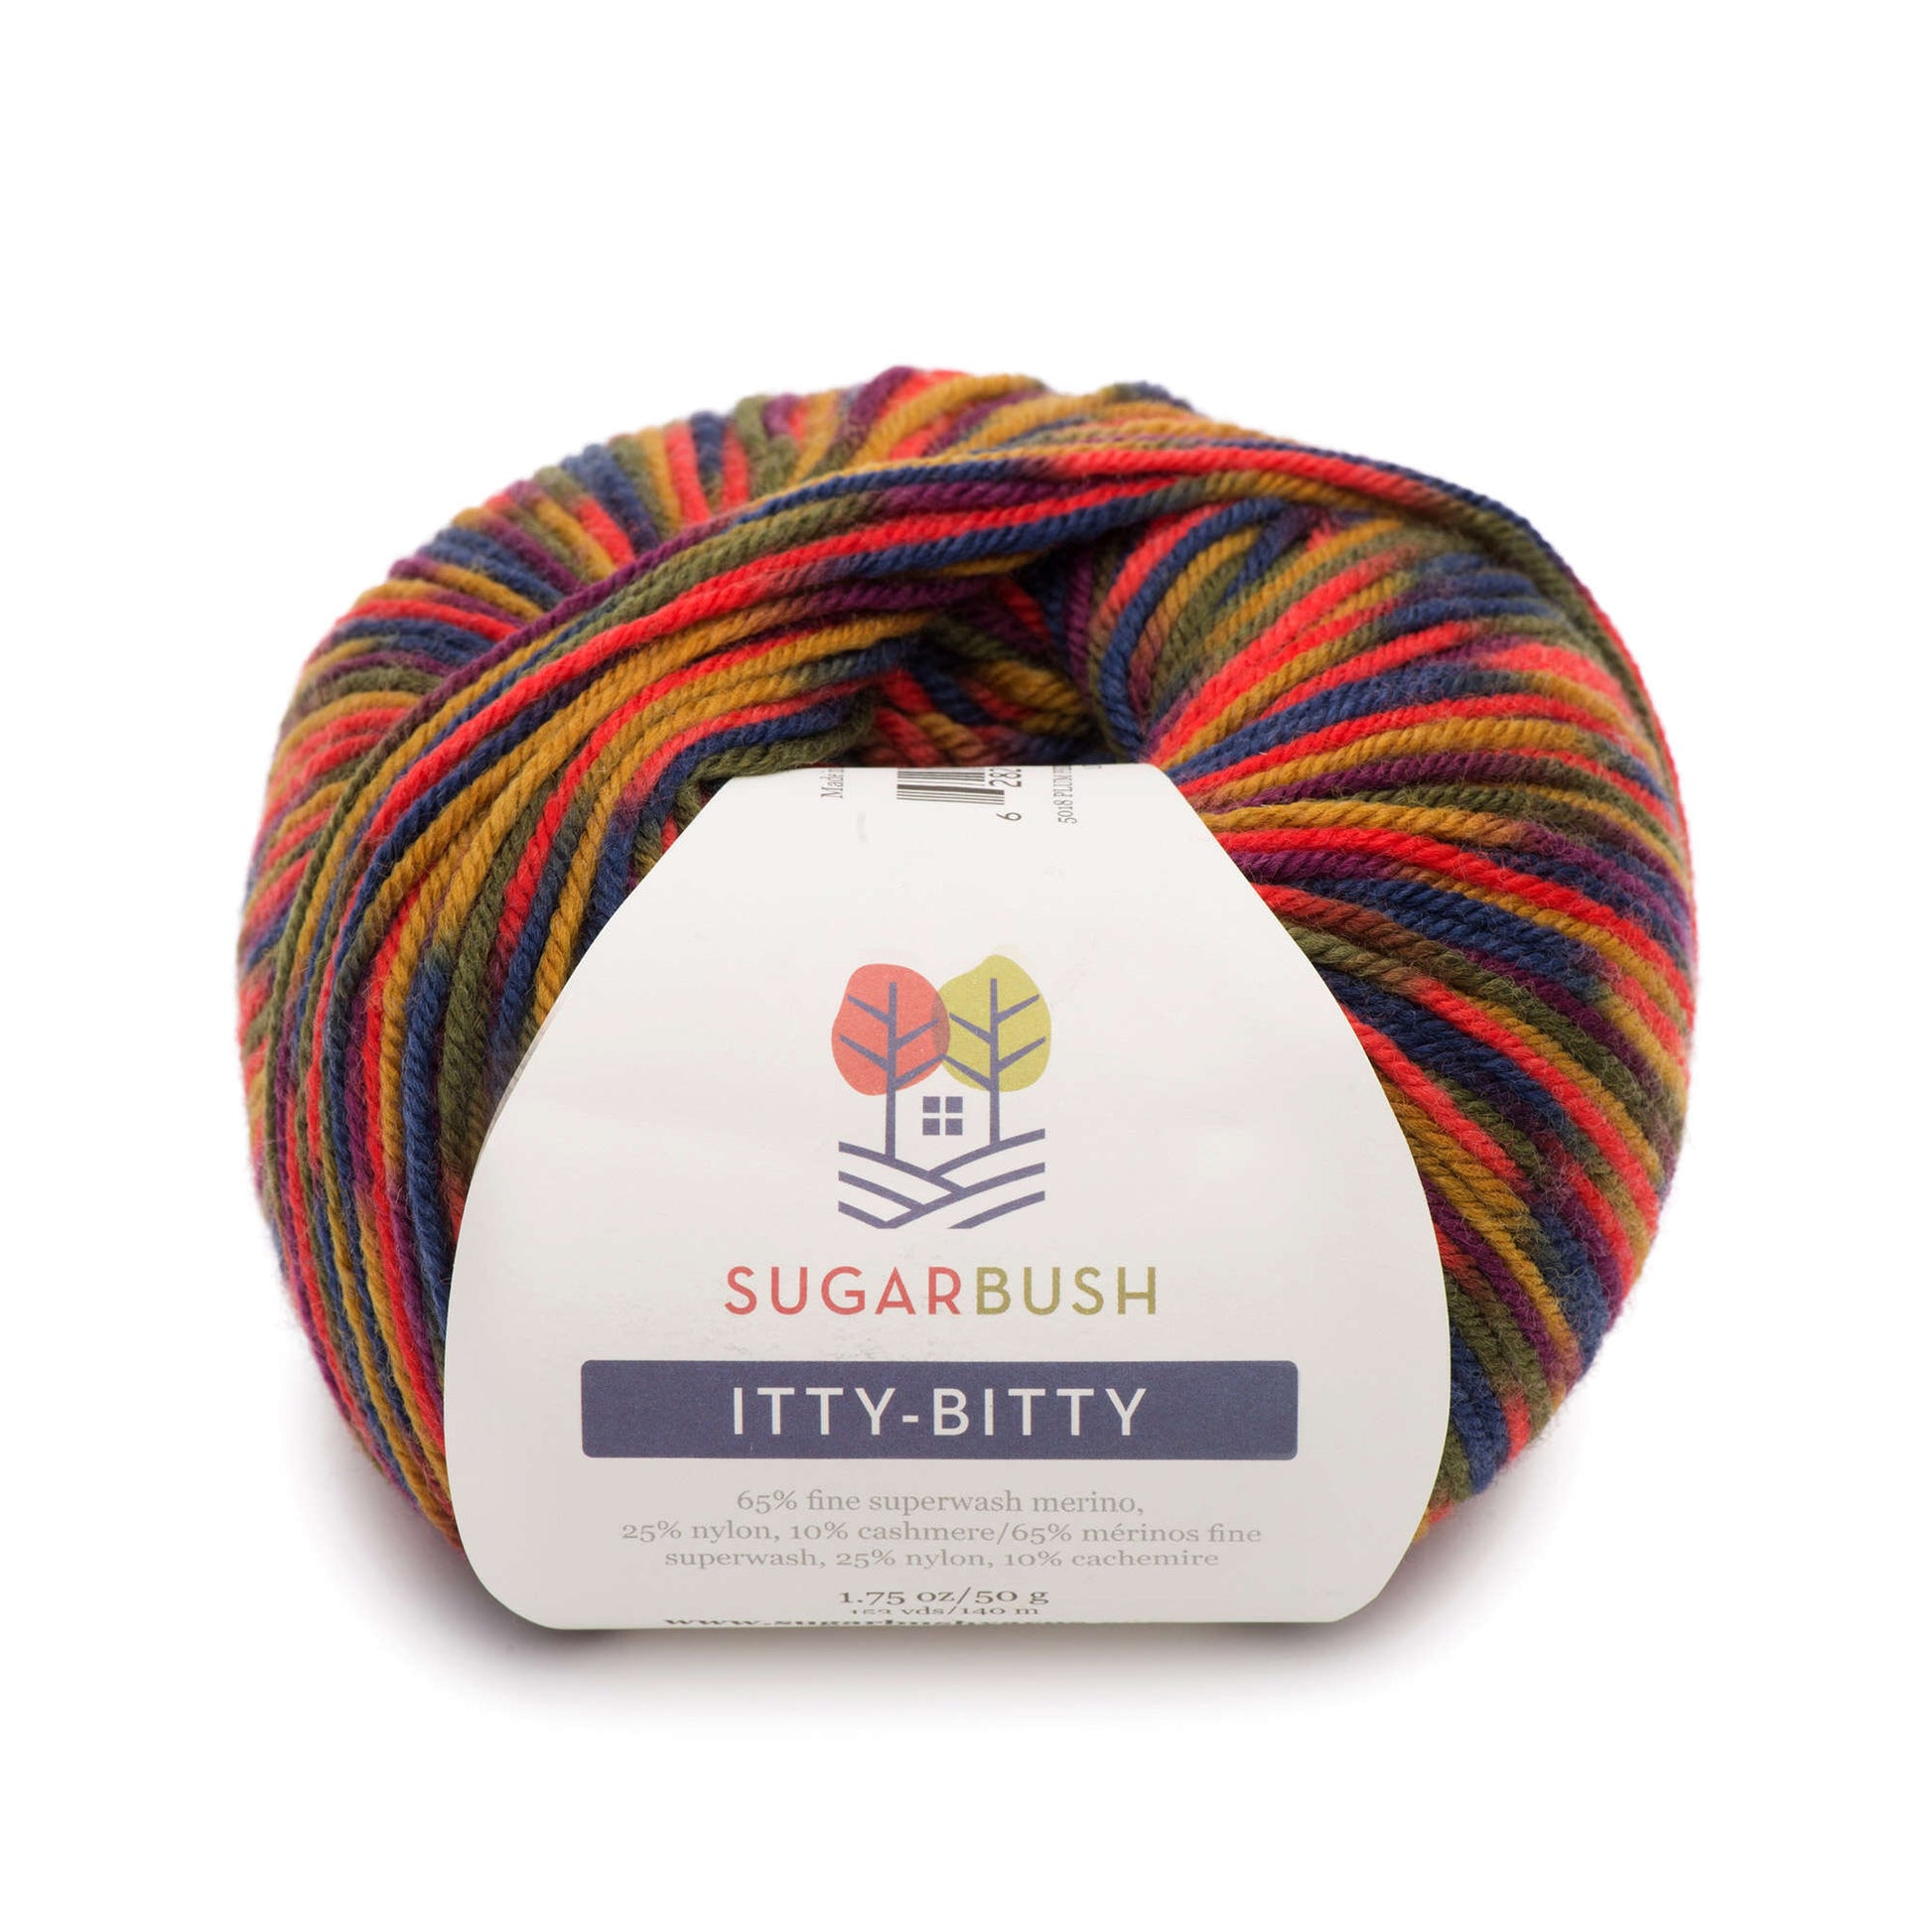 Sugar Bush Itty-Bitty Yarn - Discontinued Pum Perfect